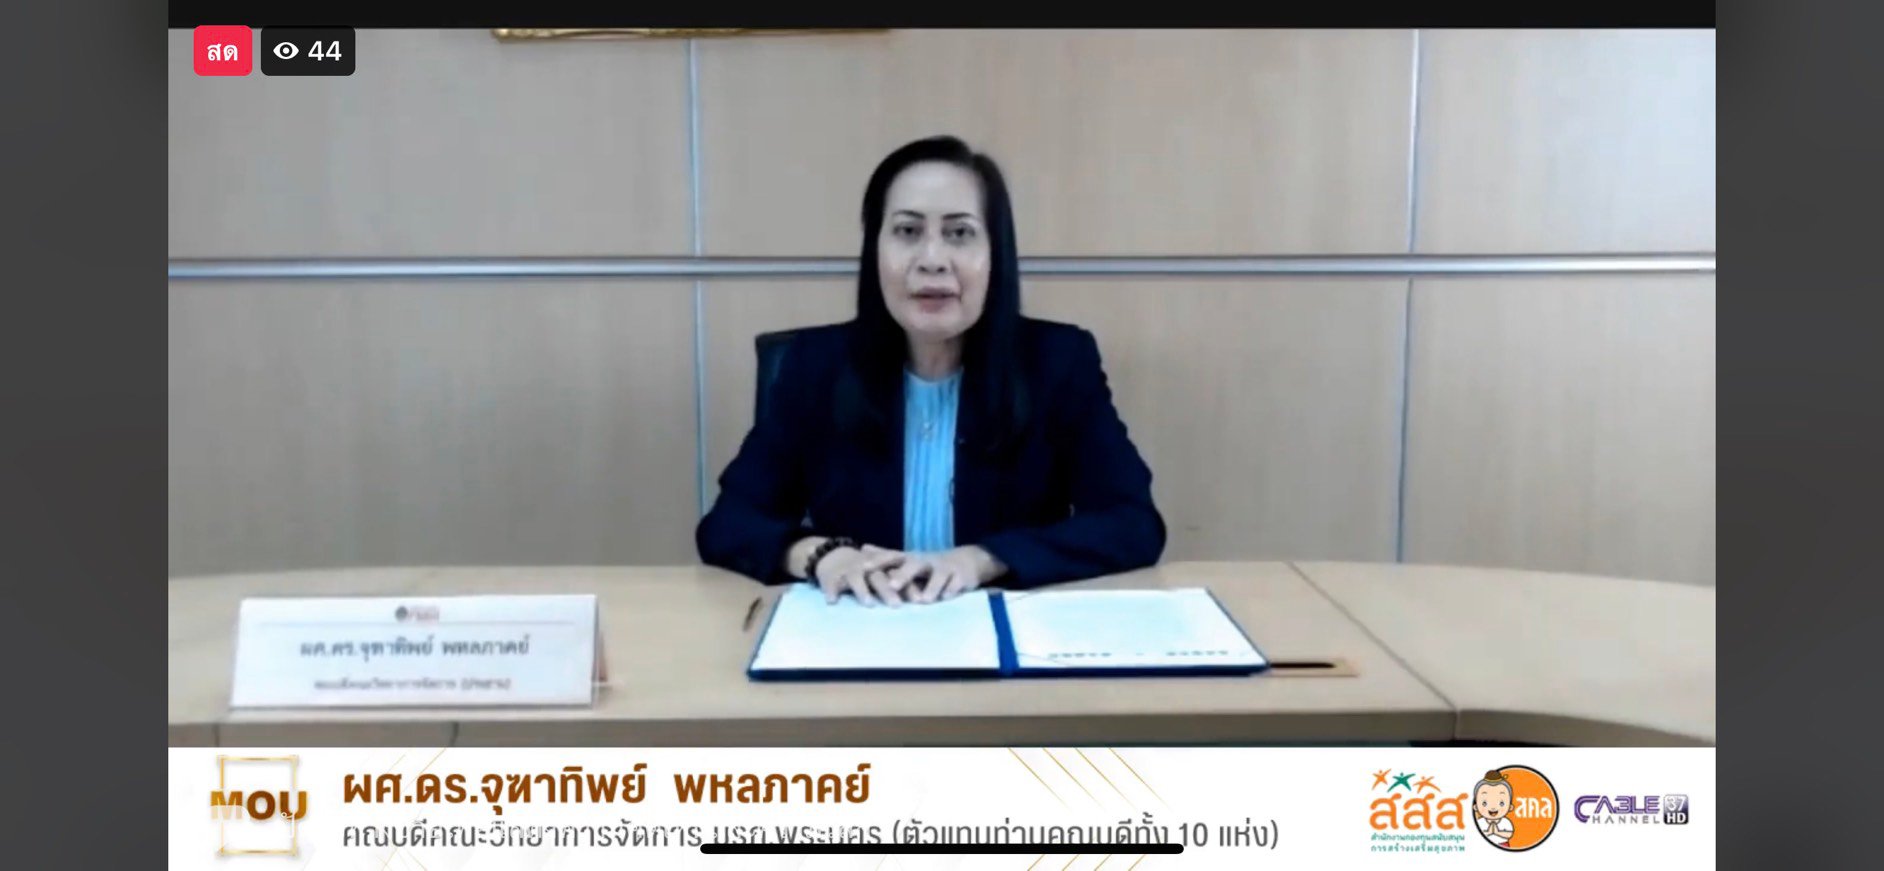 ลงนาม MOU ร่วมกับมหาวิทยาลัยราชภัฎ 10 เเห่ง สร้างนักสื่อสารเยาวชนเปลี่ยนเเปลงสุขภาวะชุมชน  thaihealth